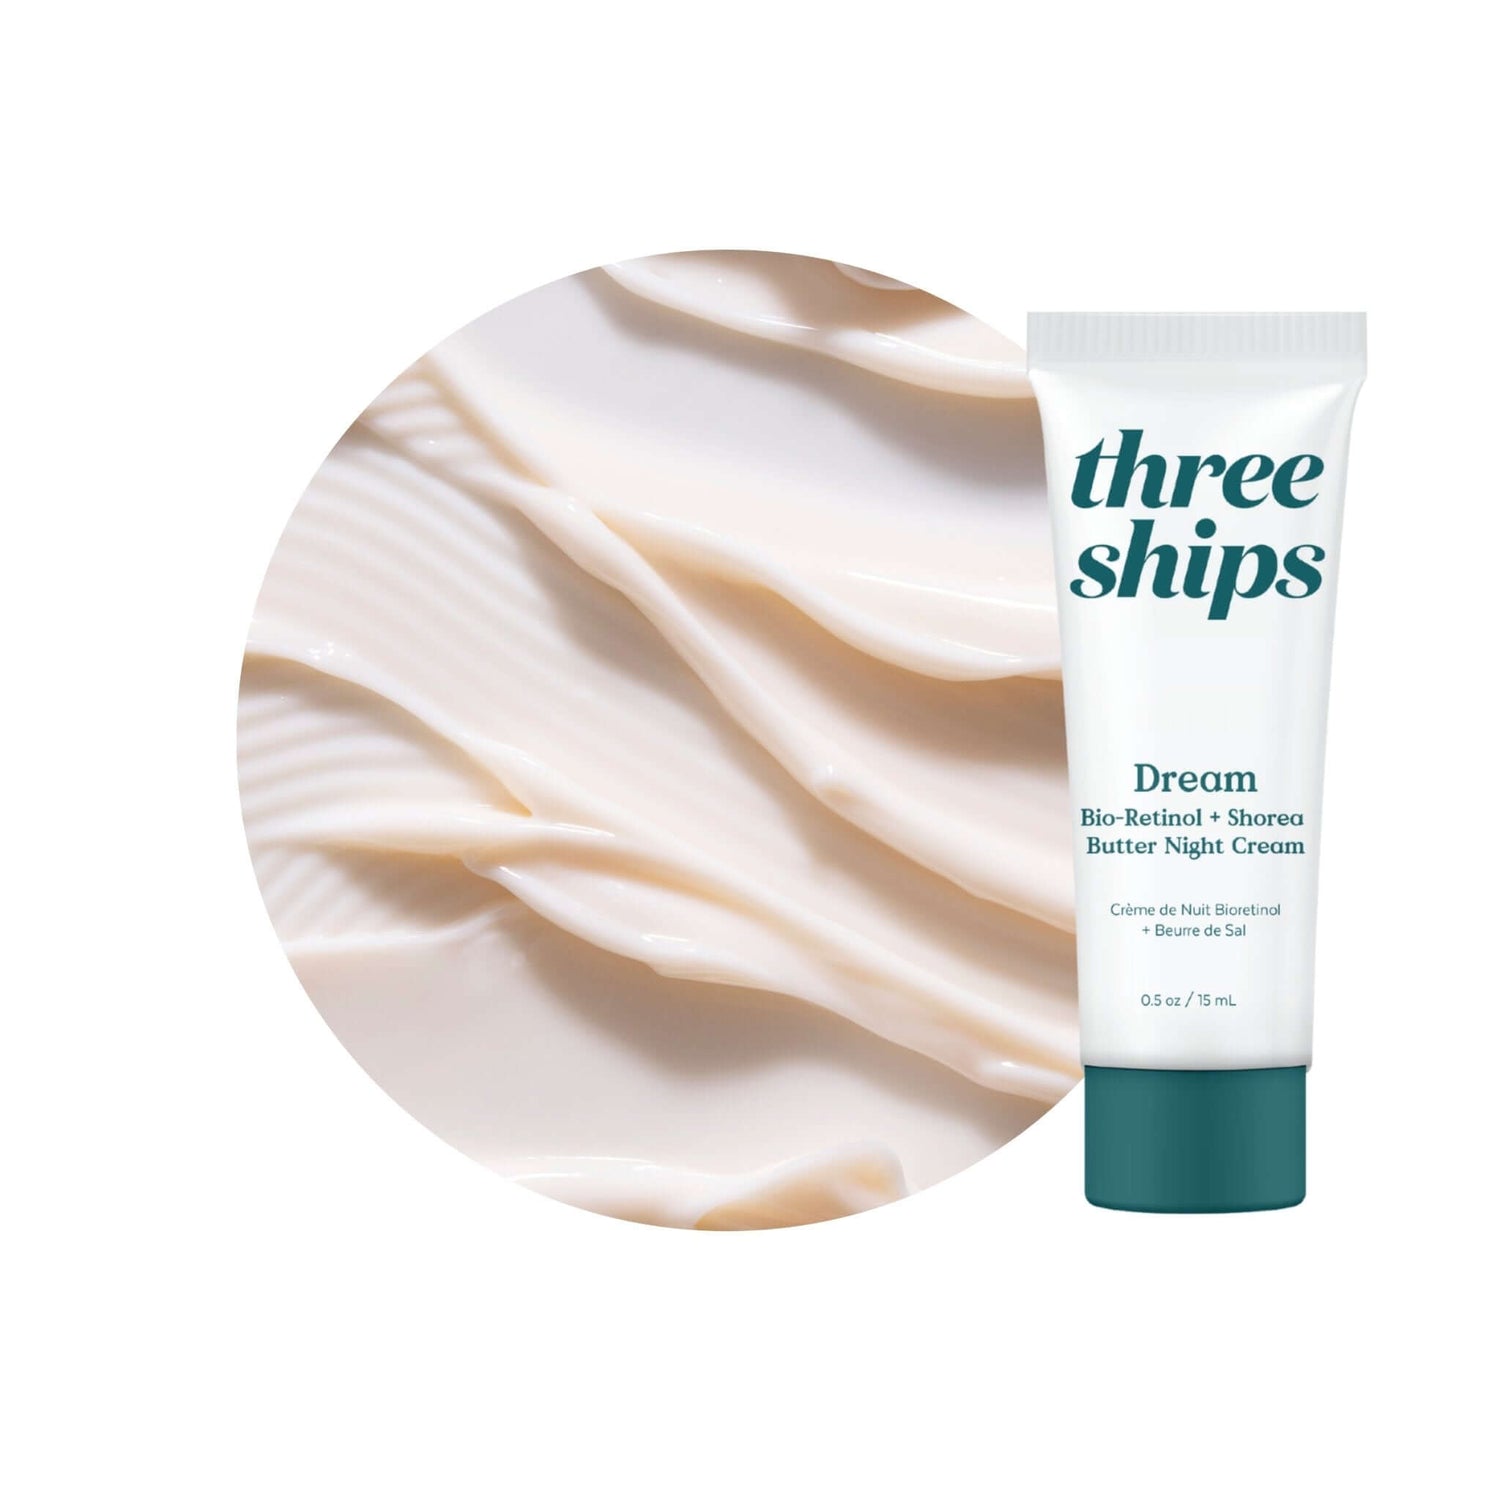 Dream Cream Deluxe Mini Three Ships MINI Natural Vegan Cruelty-free Skincare